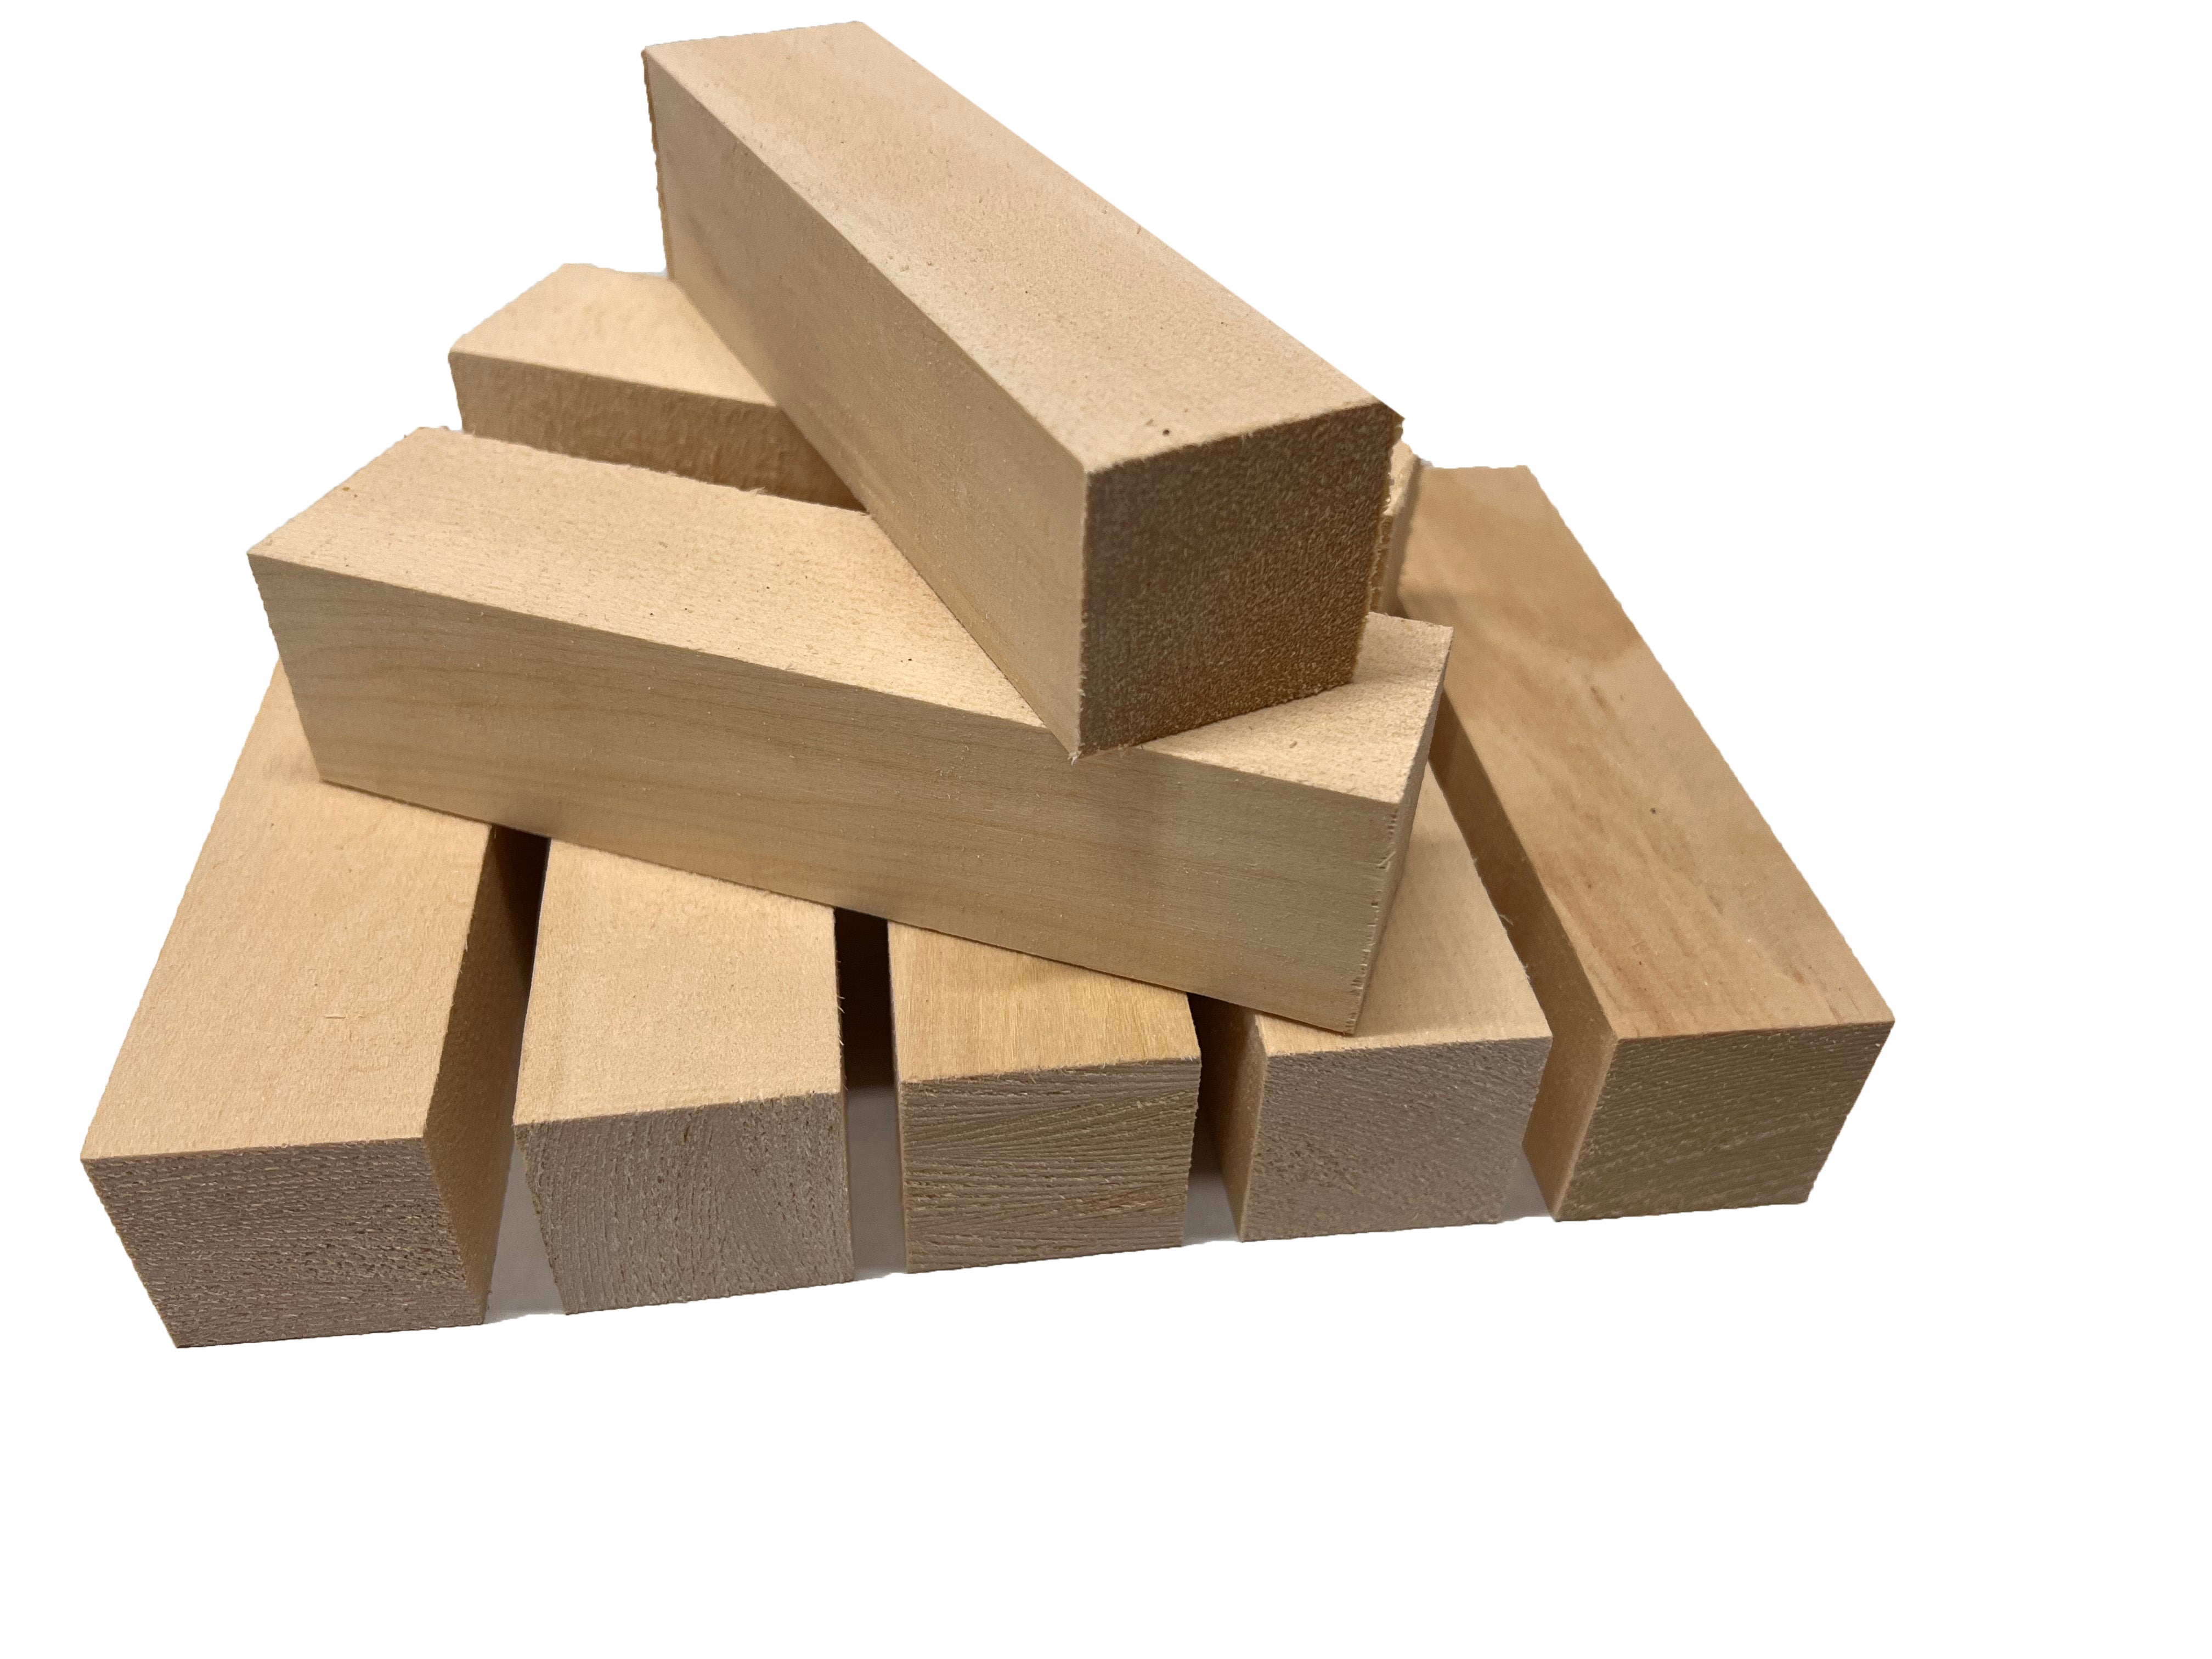  3 x 1 Friso moldeado. especies: madera de tilo tallada a  mano. – 8 'Stick : Herramientas y Mejoras del Hogar